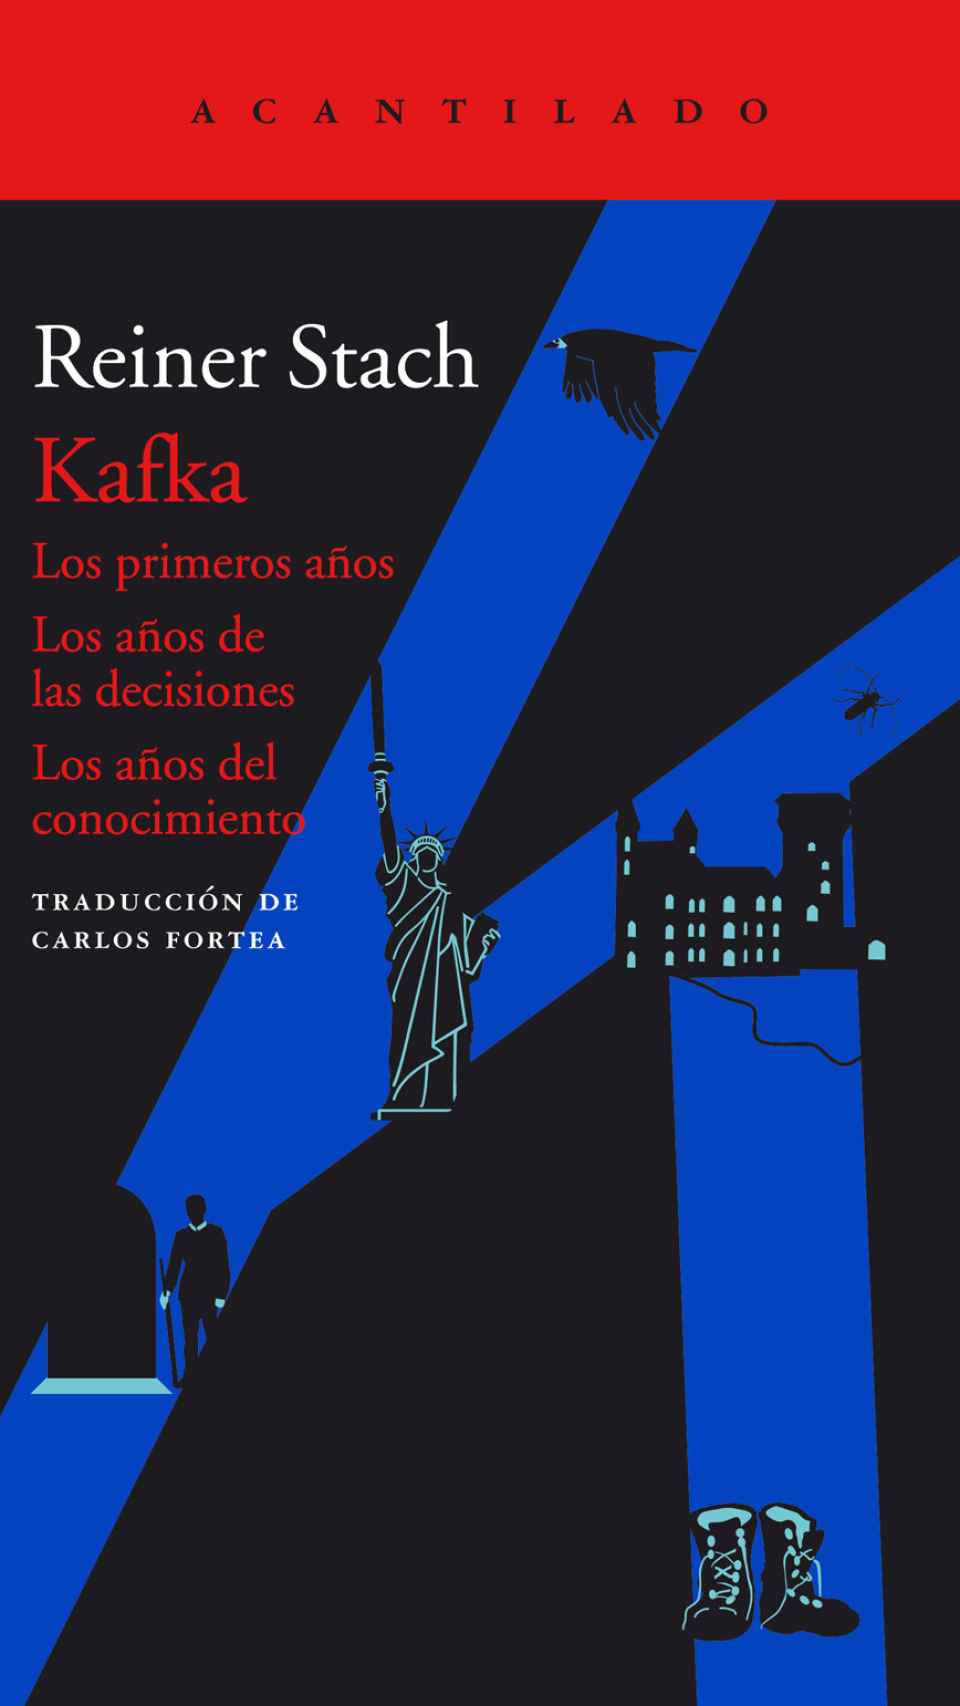 La biografía de Kafka de Reiner Stach